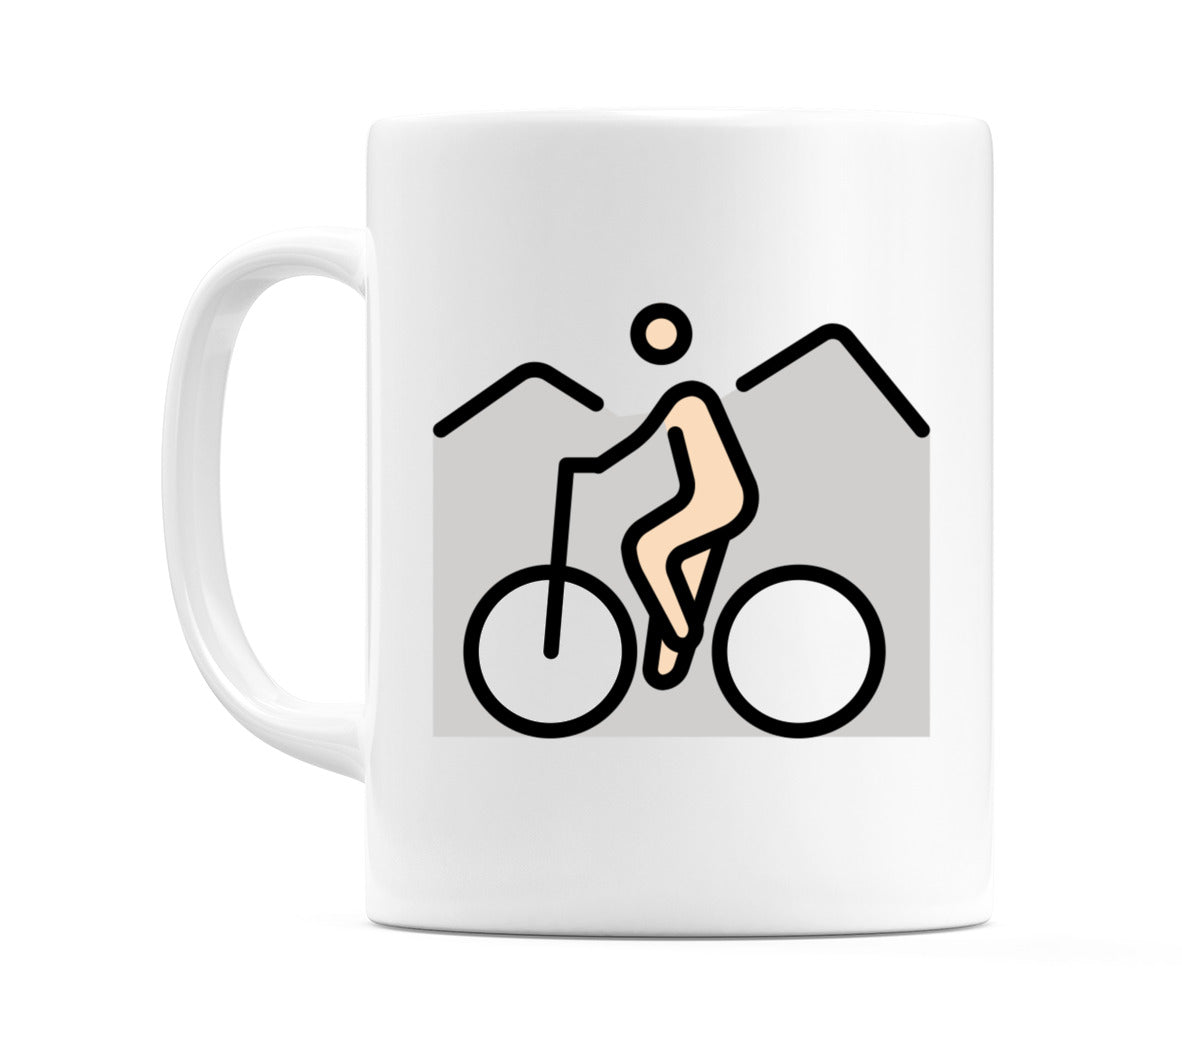 Person Mountain Biking: Light Skin Tone Emoji Mug